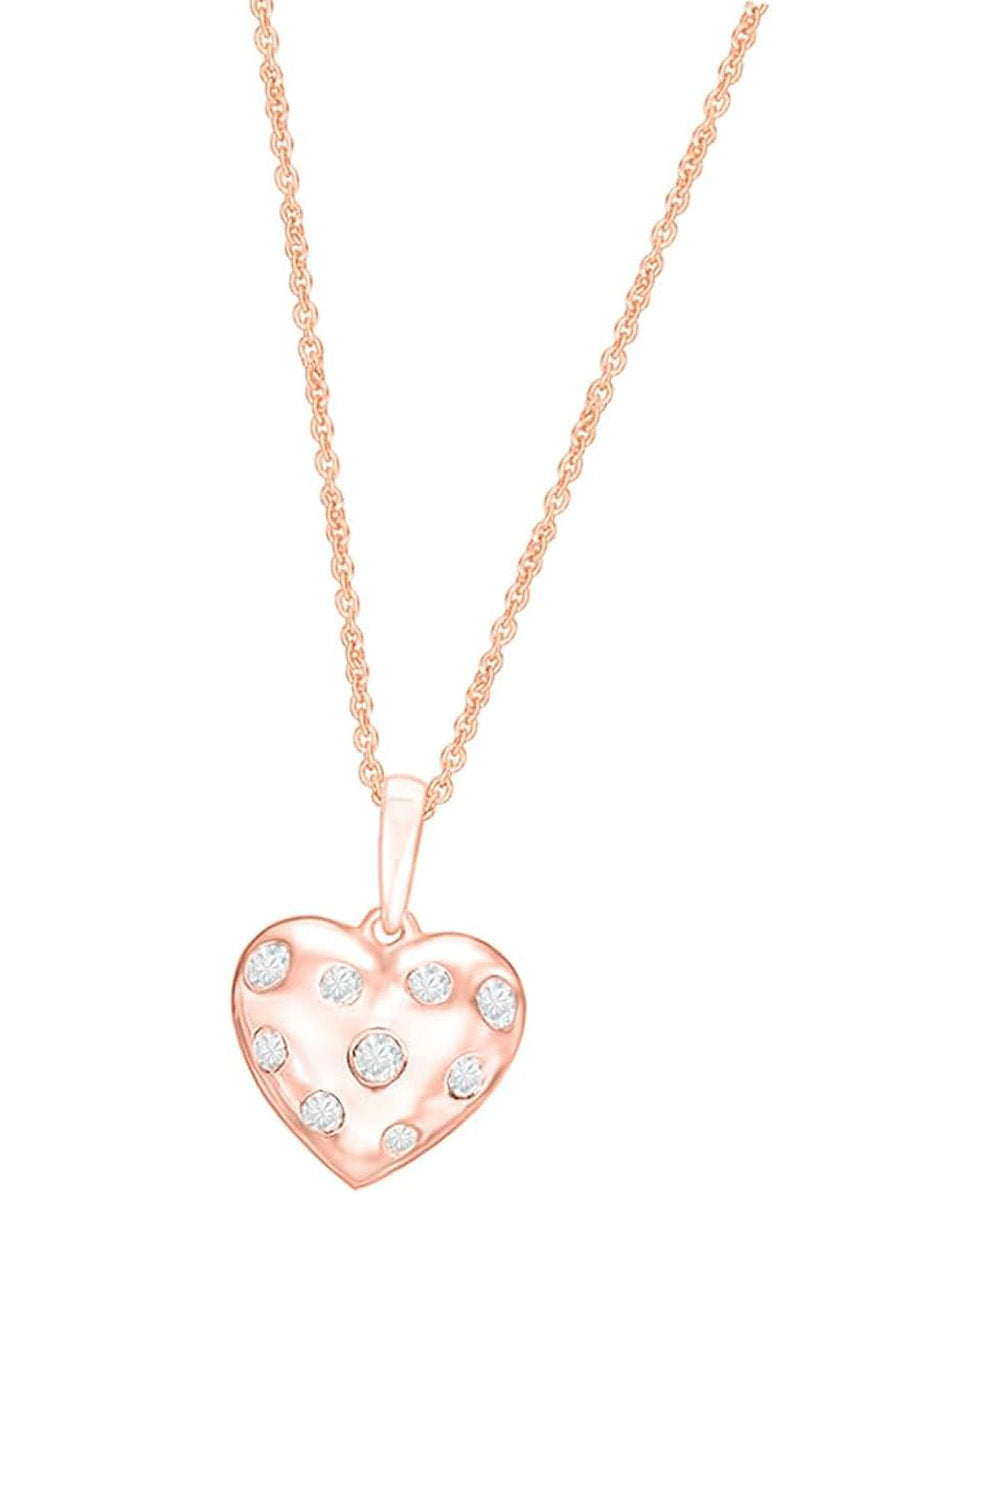 Rose Gold Color Diamond Heart Pendant Necklace, Pendant Necklaces